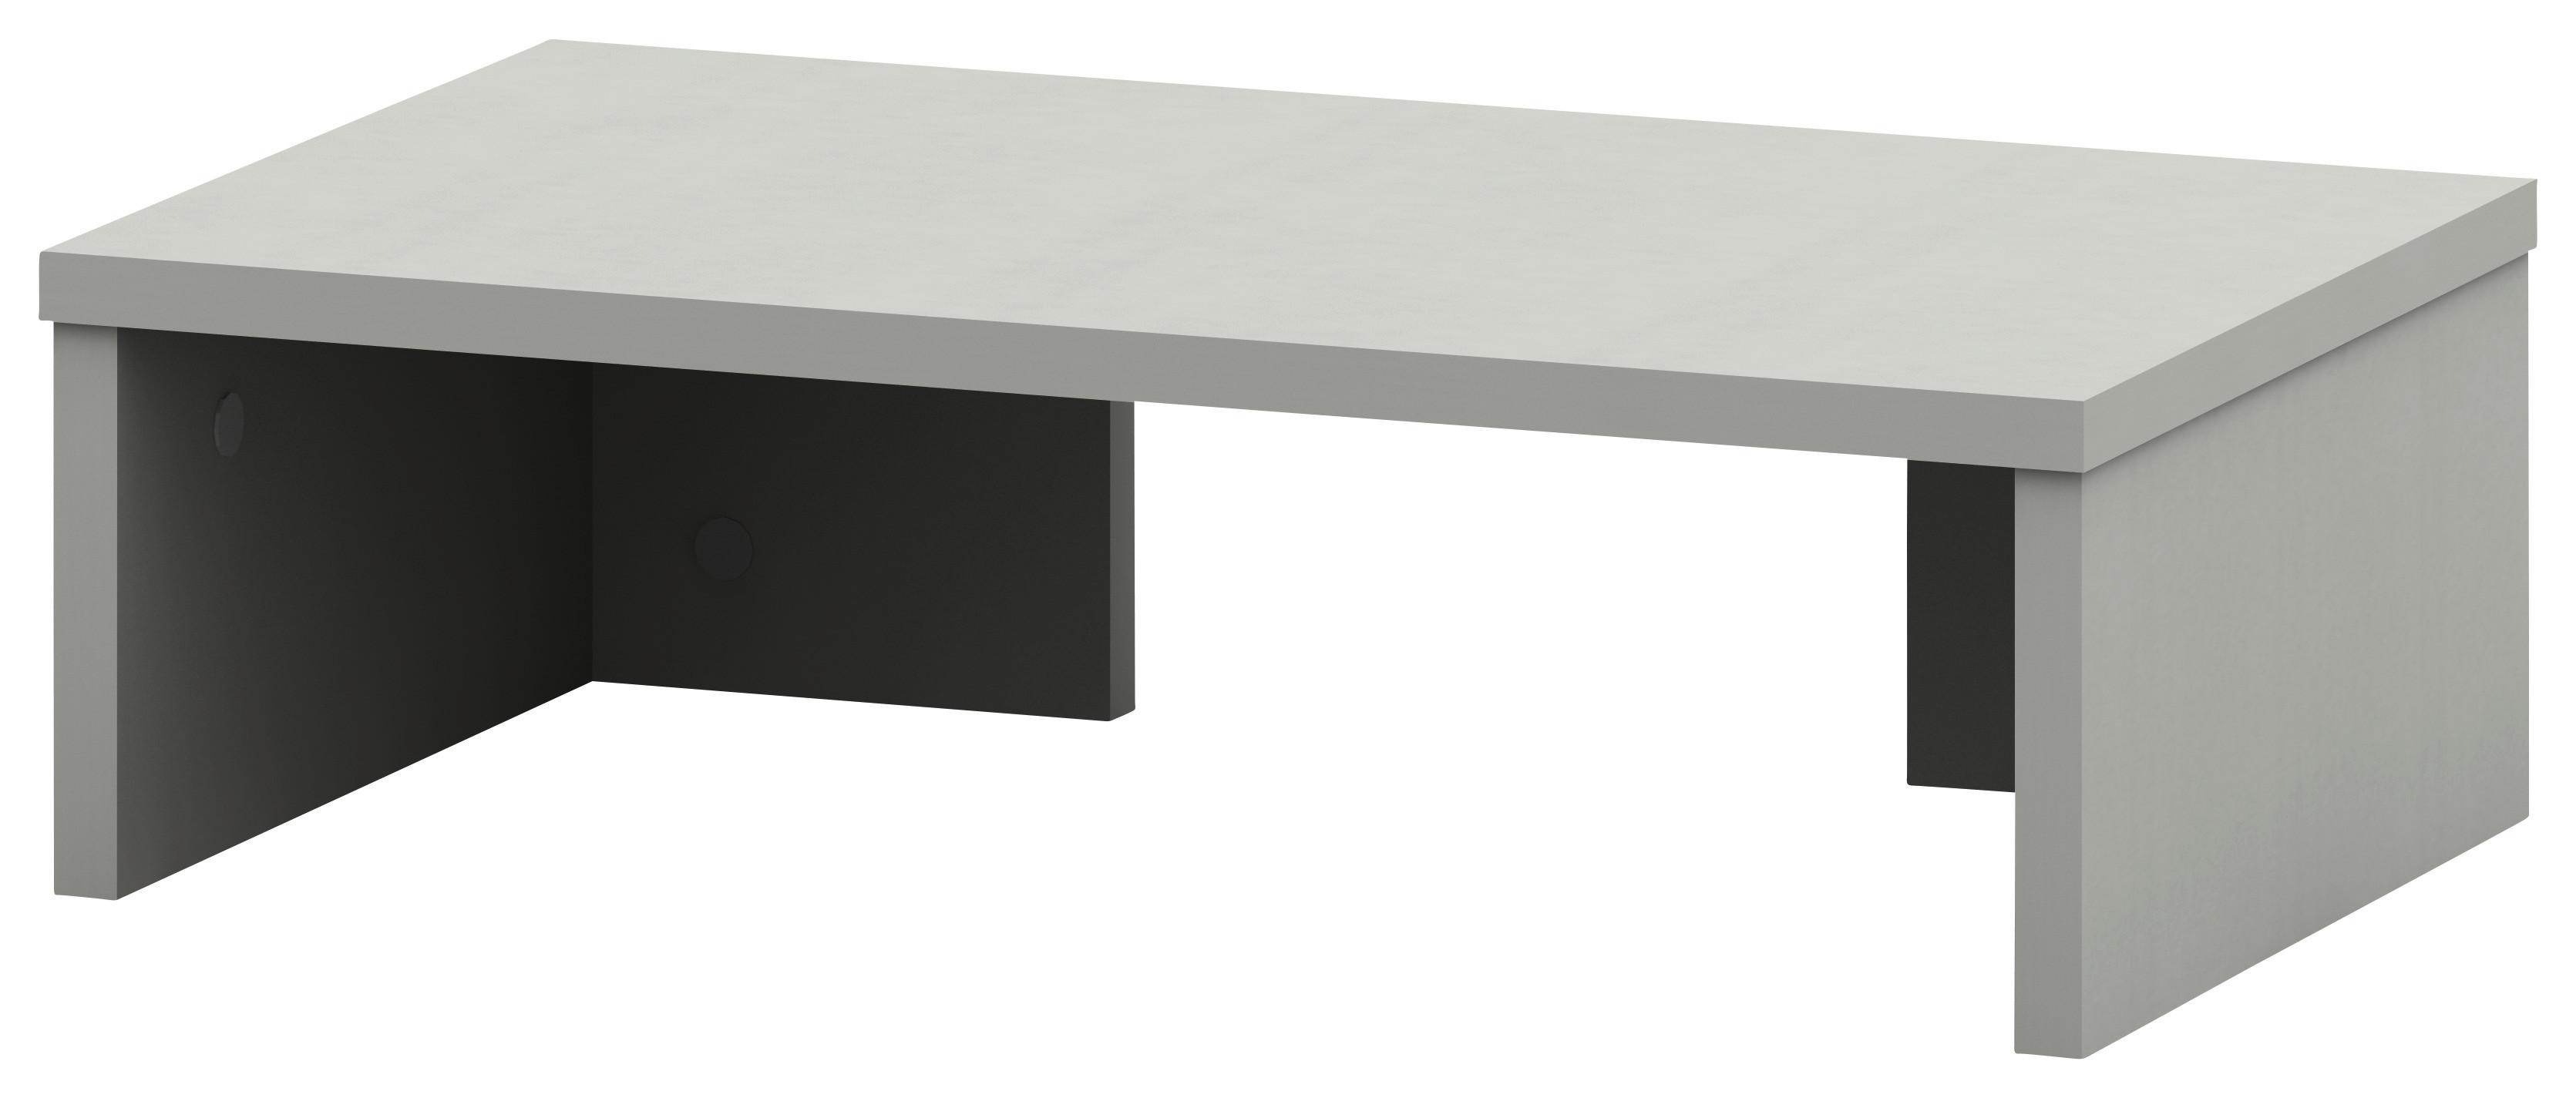 Schreibtischaufsatz B 50cm H 14,5cm Moni, Silber - Alufarben, MODERN, Holzwerkstoff (50/14,5/30cm)